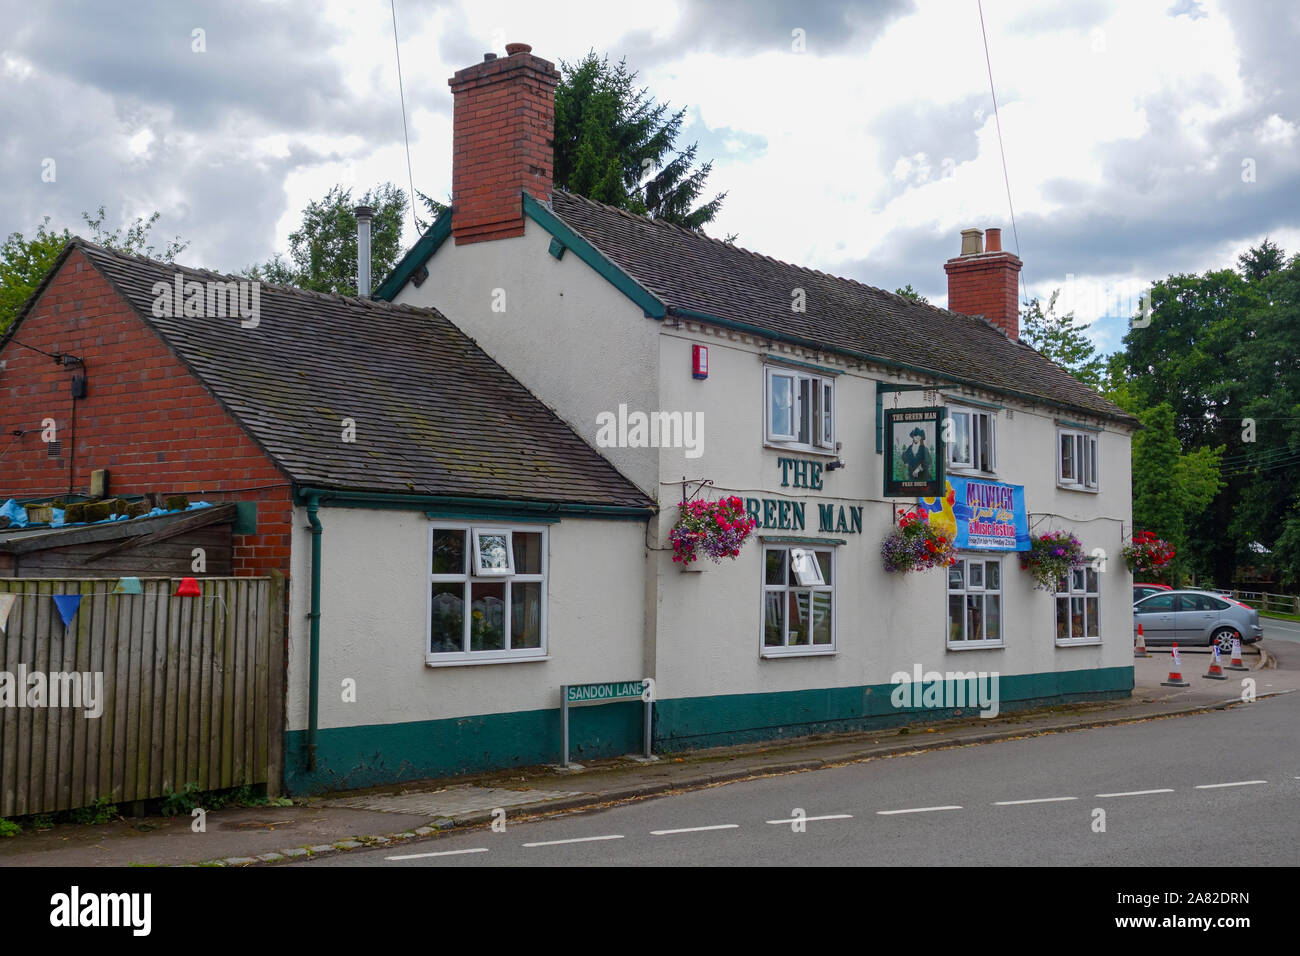 Le Green man pub ou public house dans le village de Milwich, près de Stafford, Staffordshire, England, UK Banque D'Images